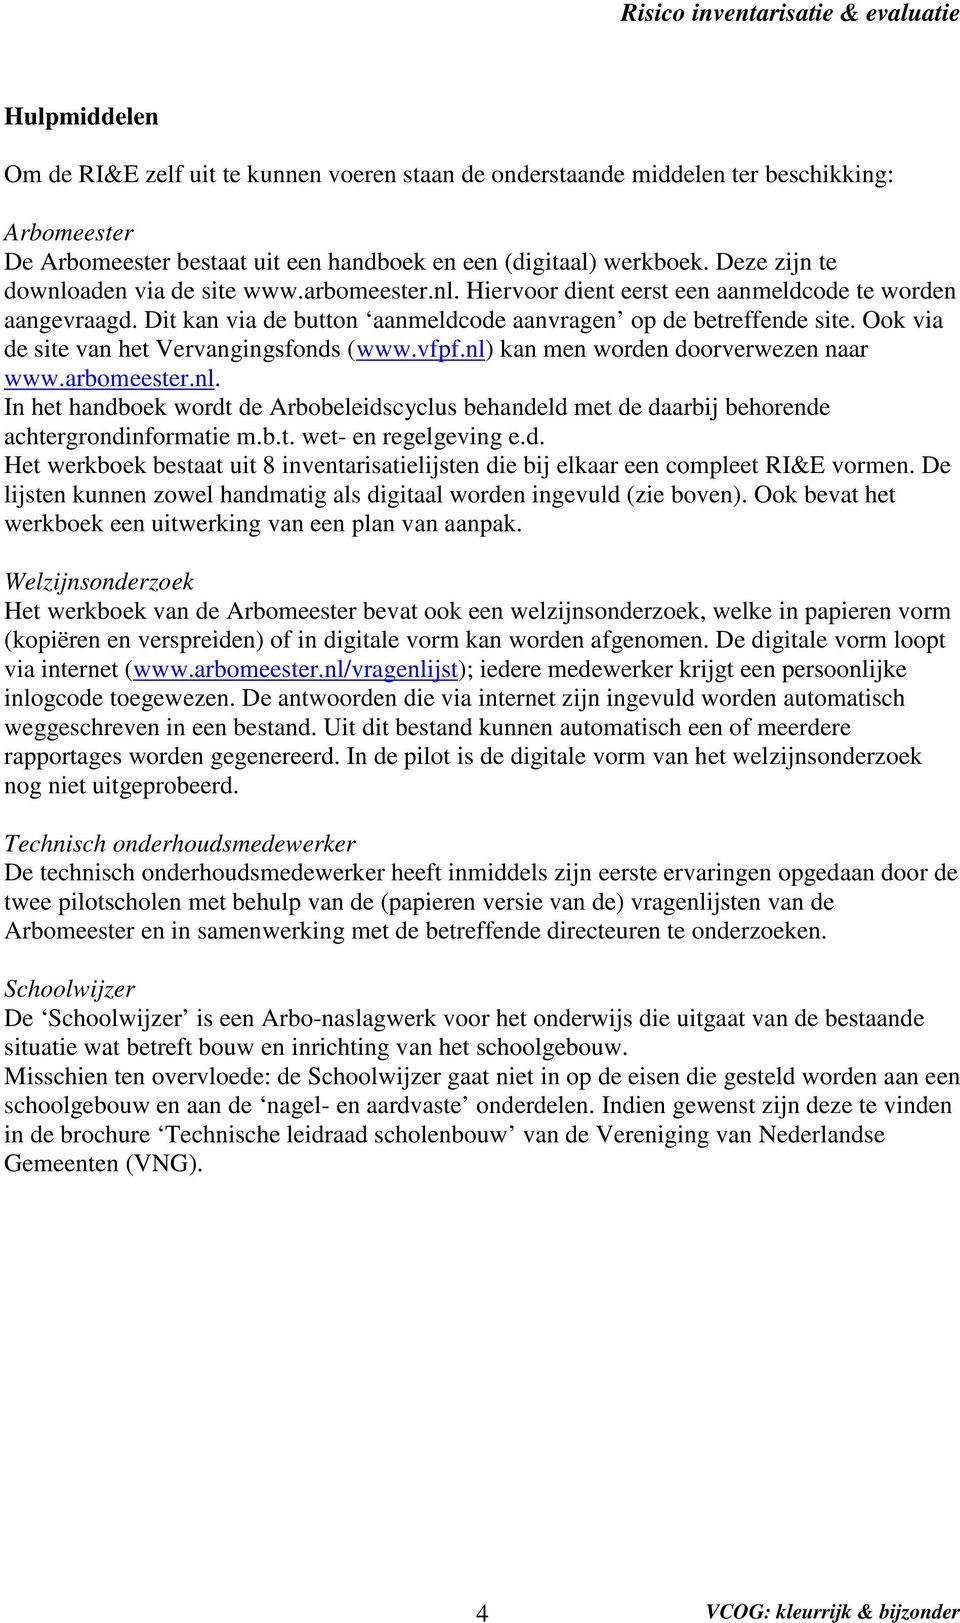 Ook via de site van het Vervangingsfonds (www.vfpf.nl) kan men worden doorverwezen naar www.arbomeester.nl. In het handboek wordt de Arbobeleidscyclus behandeld met de daarbij behorende achtergrondinformatie m.